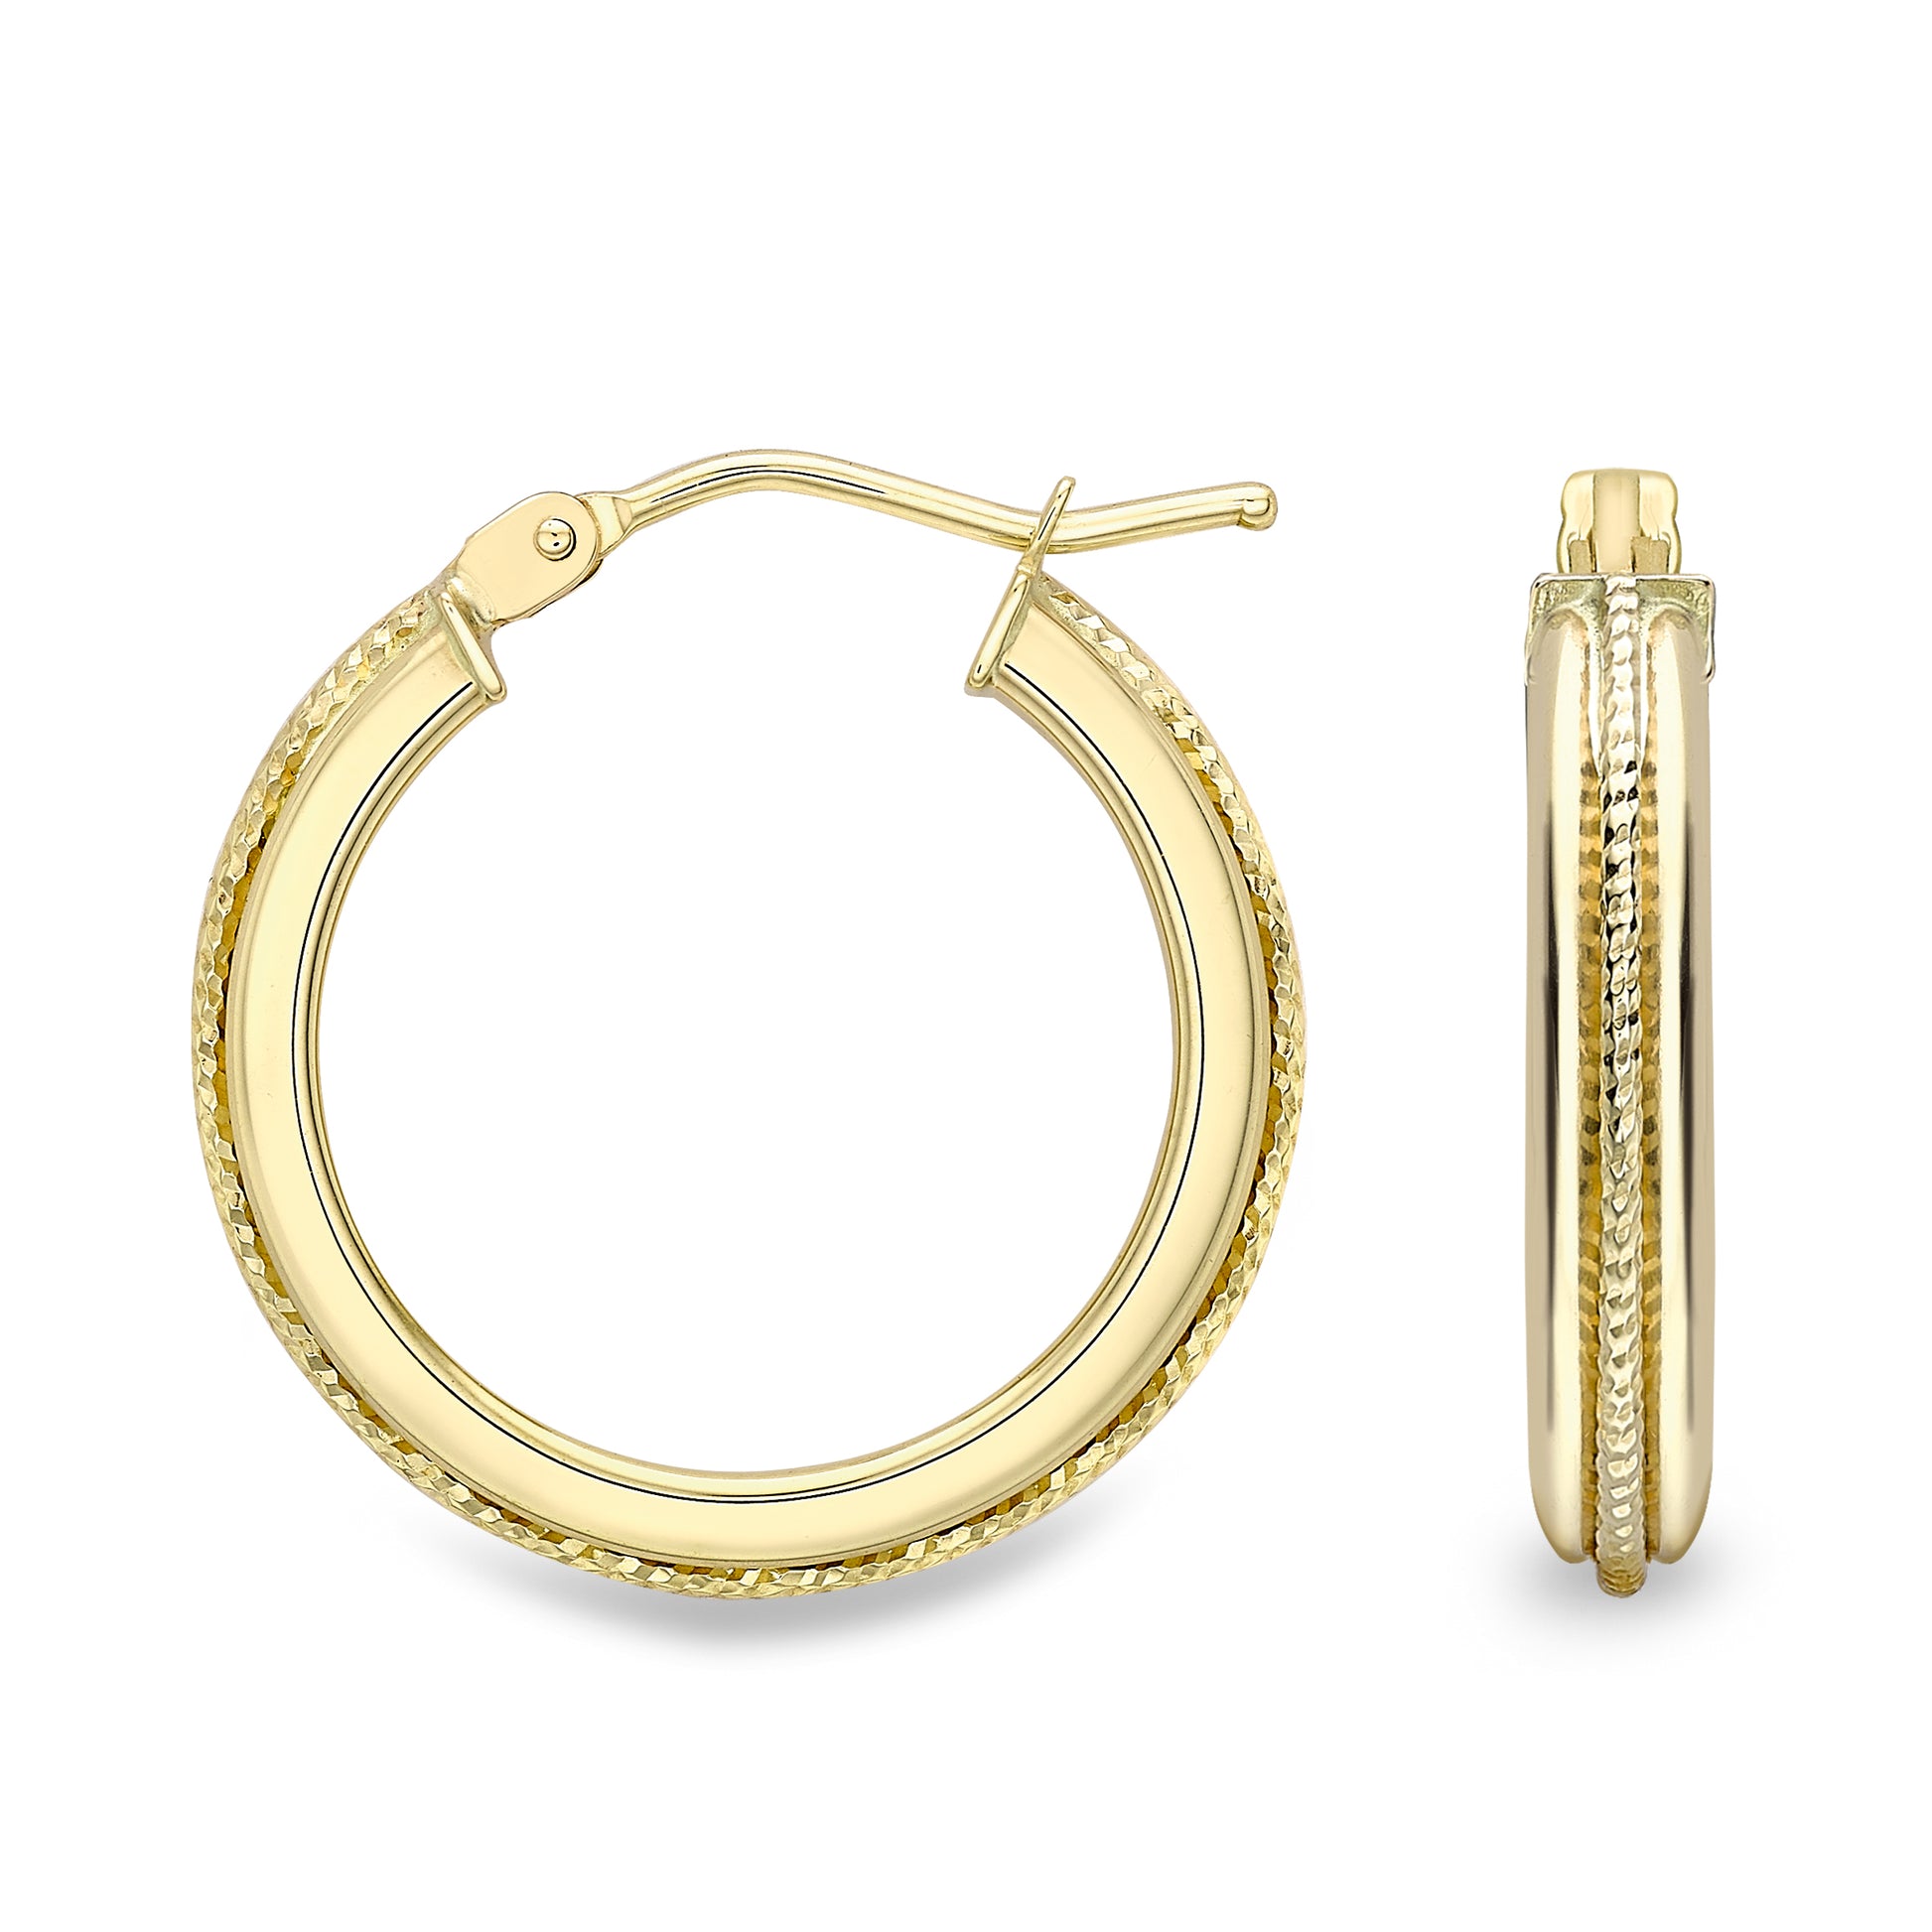 9ct Gold  Bead Rope Raised Edge Hoop Earrings 2mm - ERNR02451